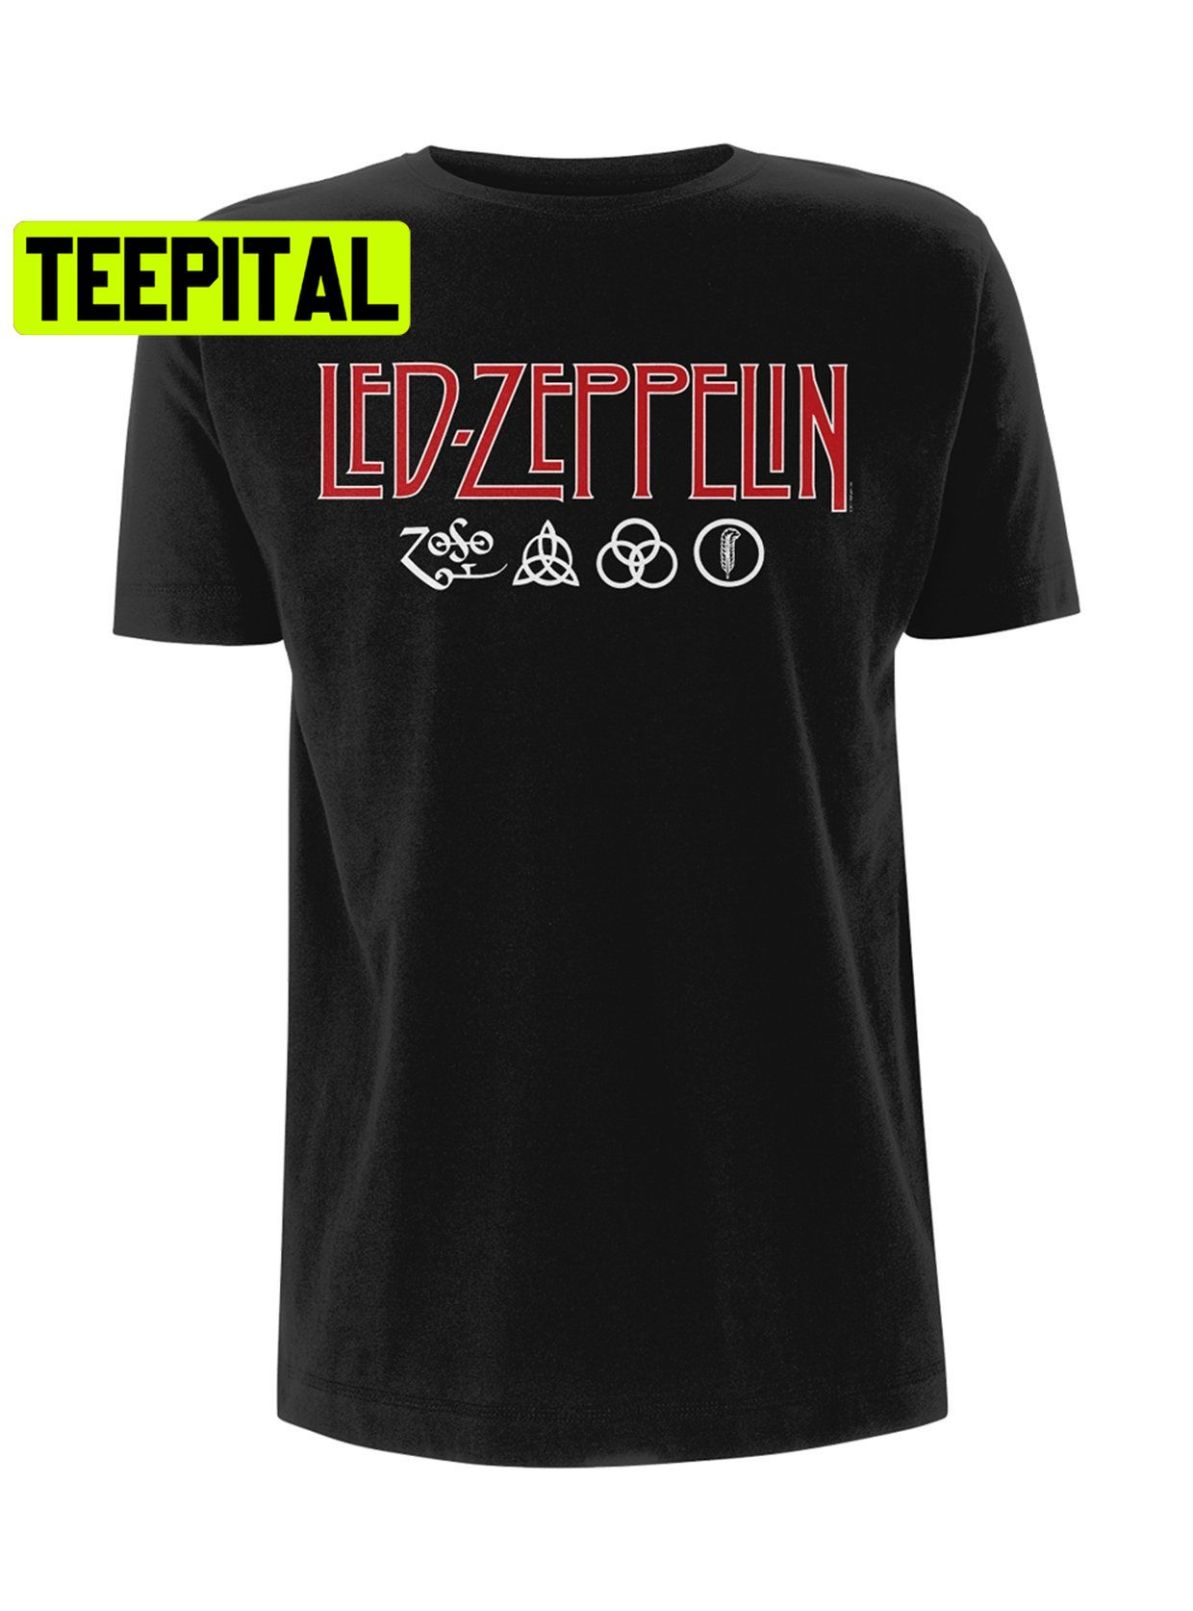 Led Zeppelin Logo And Symbols Jimmy Page Trending Unisex Shirt